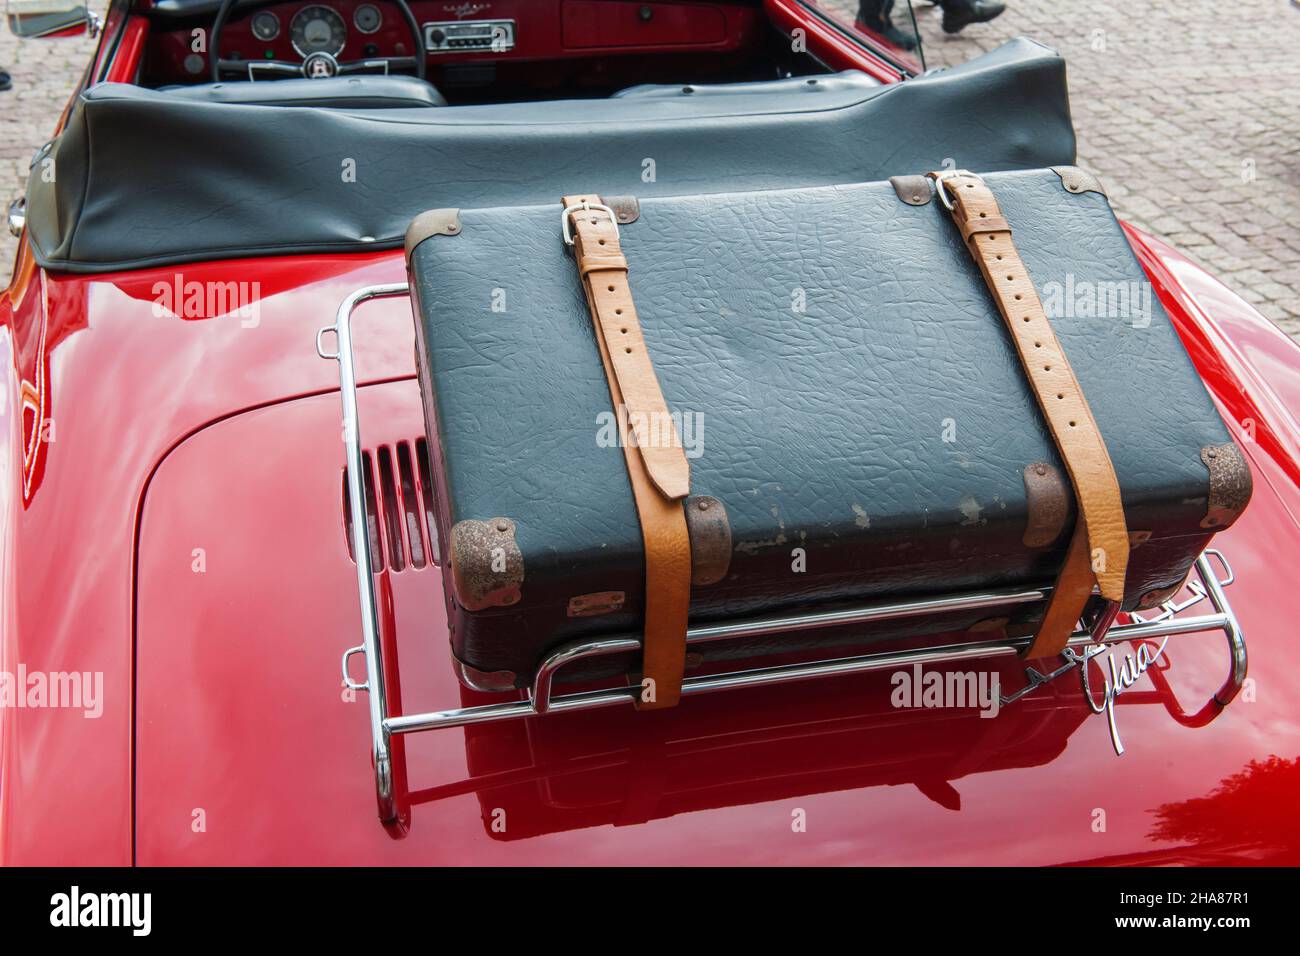 OrtEsens, Deutschland - 19. September 2021: Rückansicht eines Karman Ghia  Cabriolets mit umgeschnalltem schwarzem Koffer auf einem verchromten Gepäckträger  Oldtimer Stockfotografie - Alamy